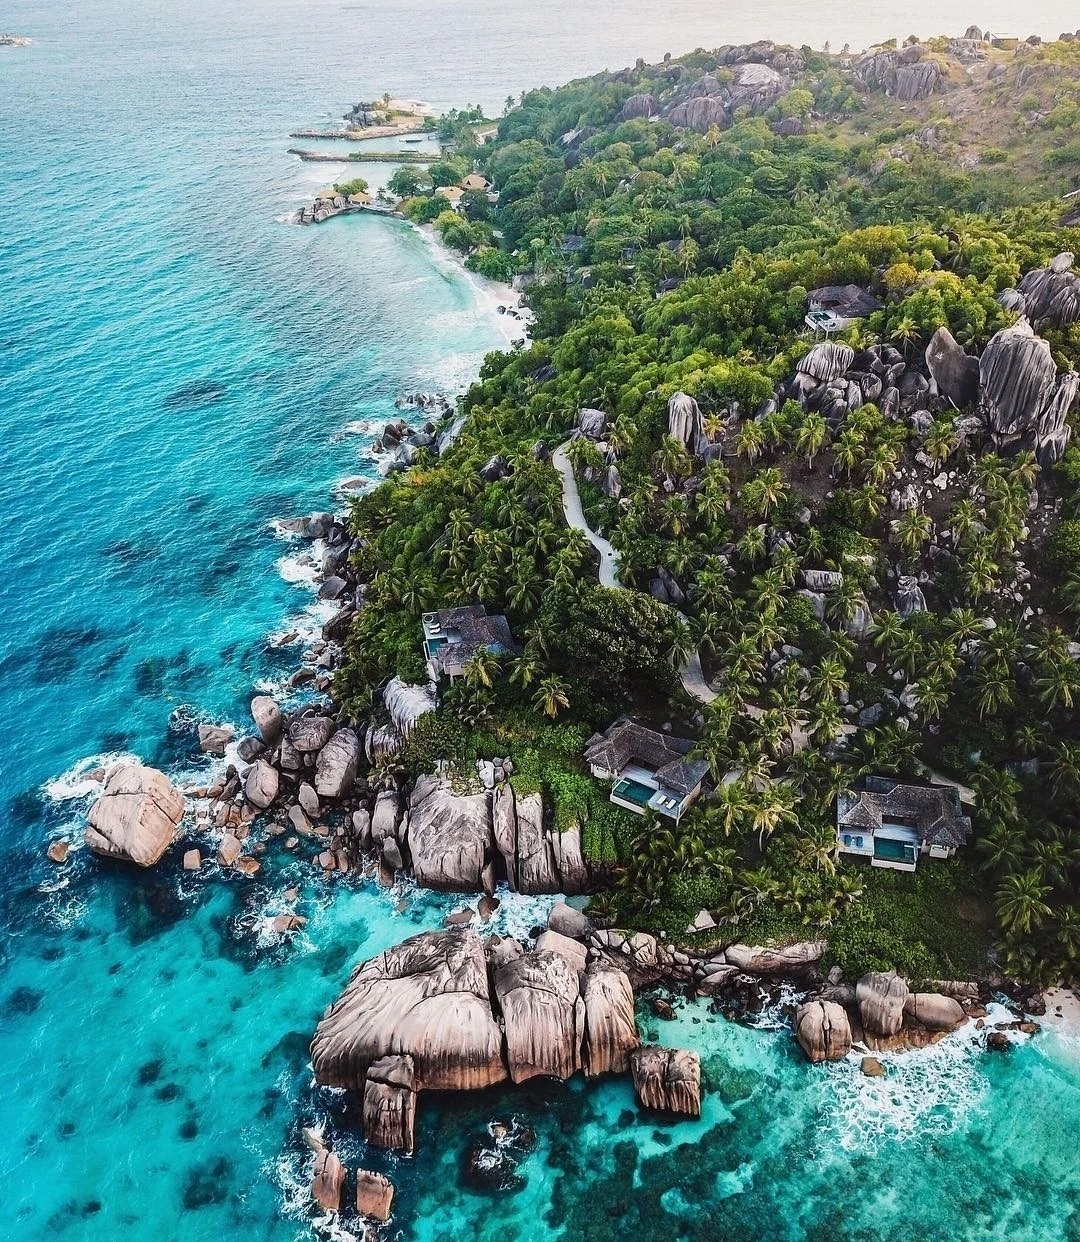 安利:印度洋明珠-塞舌尔 塞舌尔，位于印度洋上，由115个大小岛屿组 成，热带雨林气候。著名球星贝克